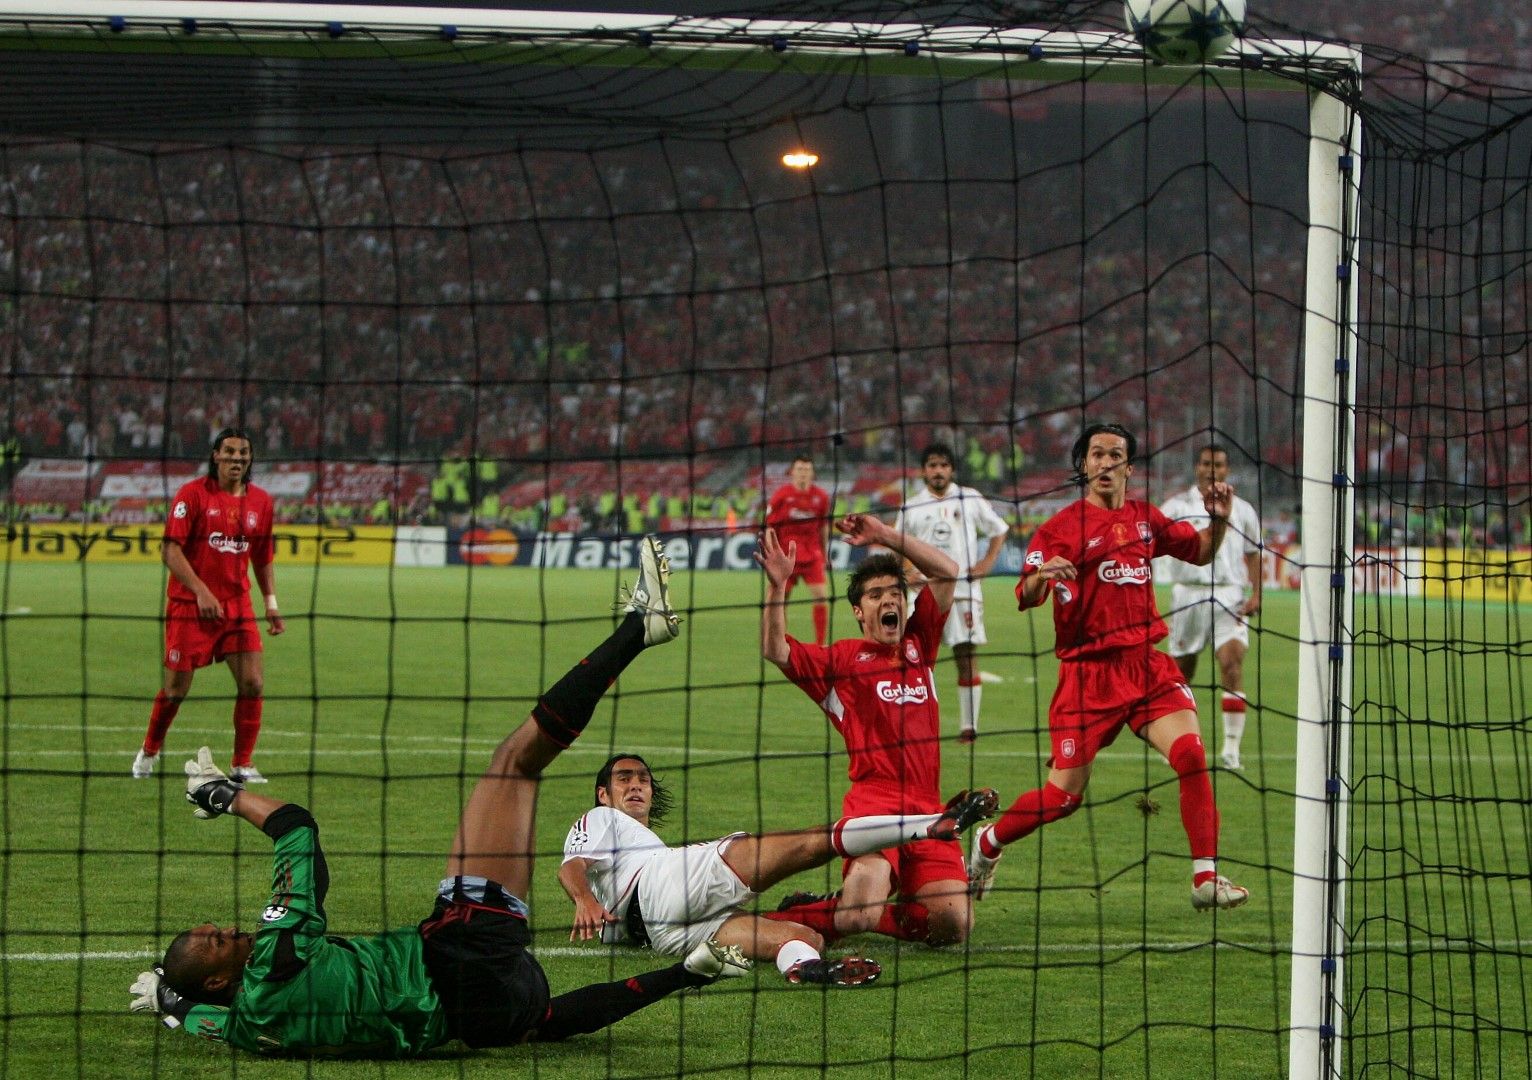 2005 г. Шаби Алонсо бележи третия гол за Ливърпул, за да изравни за 3:3 срещу Милан. Момент, в който личат хиляди думи.